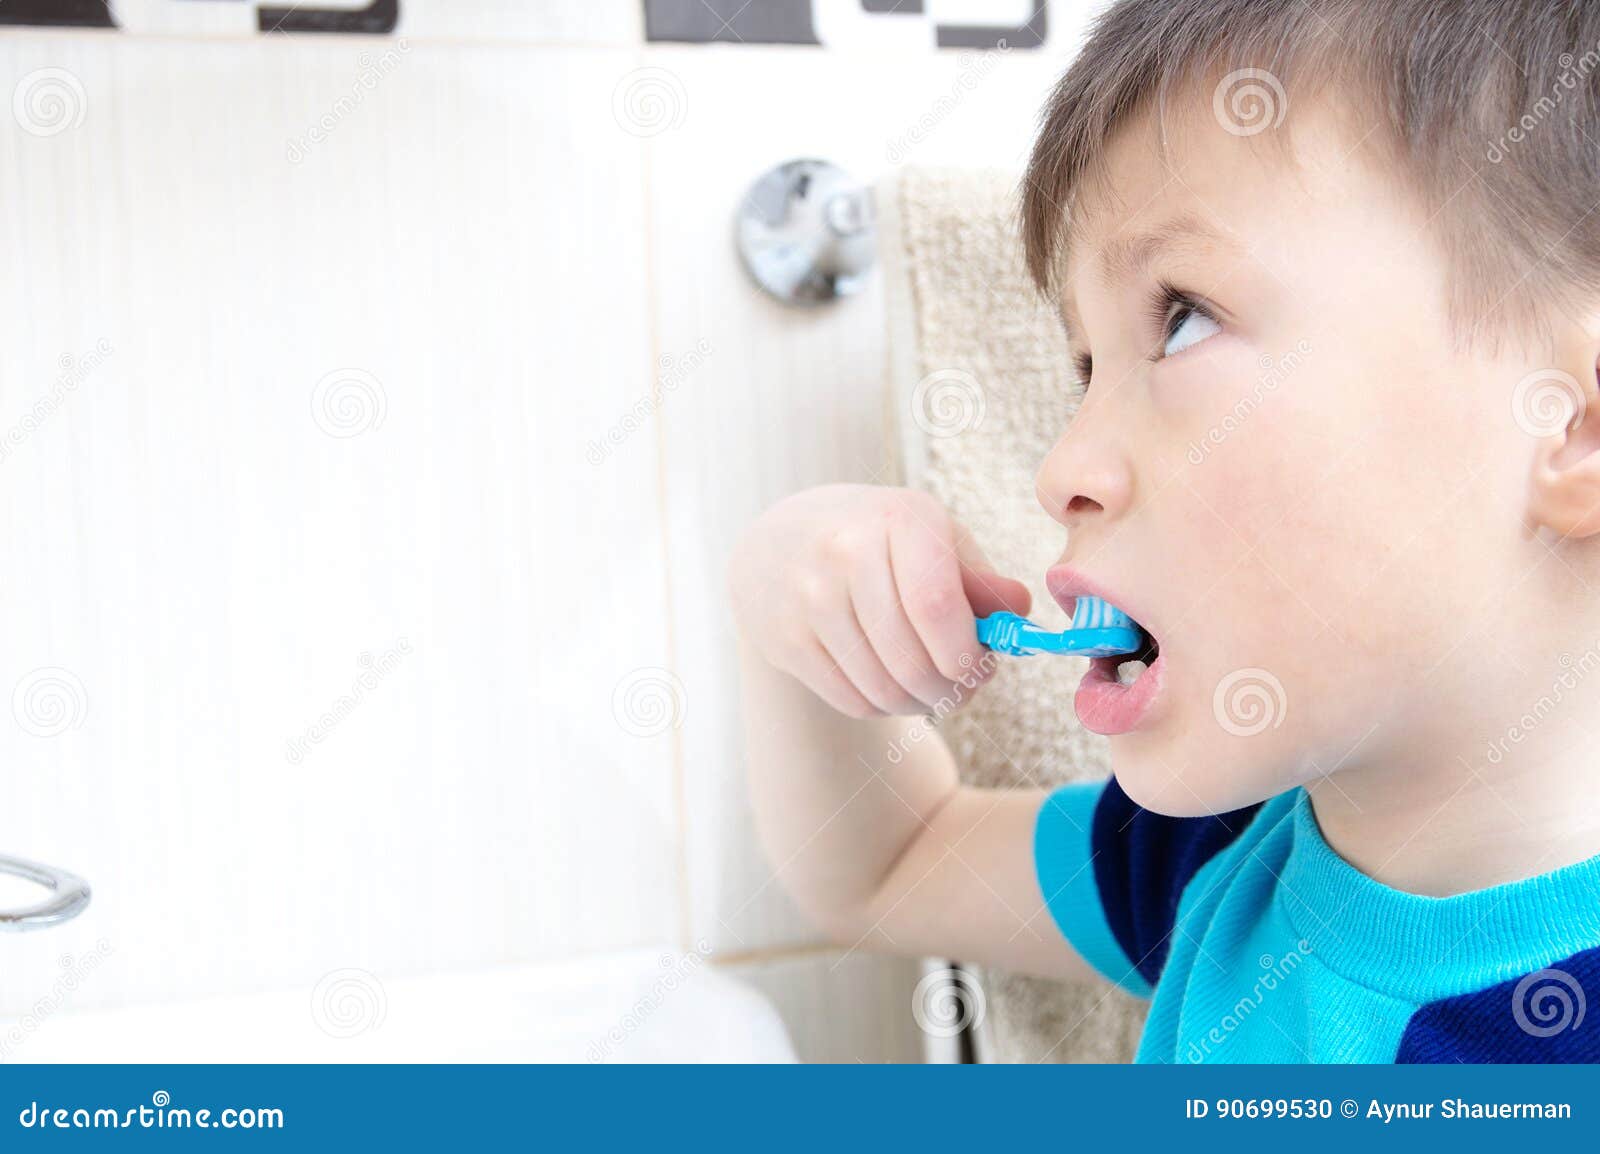 Сестра забыла закрыться в ванной. Детский ротик ест сливки. Пацан чистит зубы ВПР.